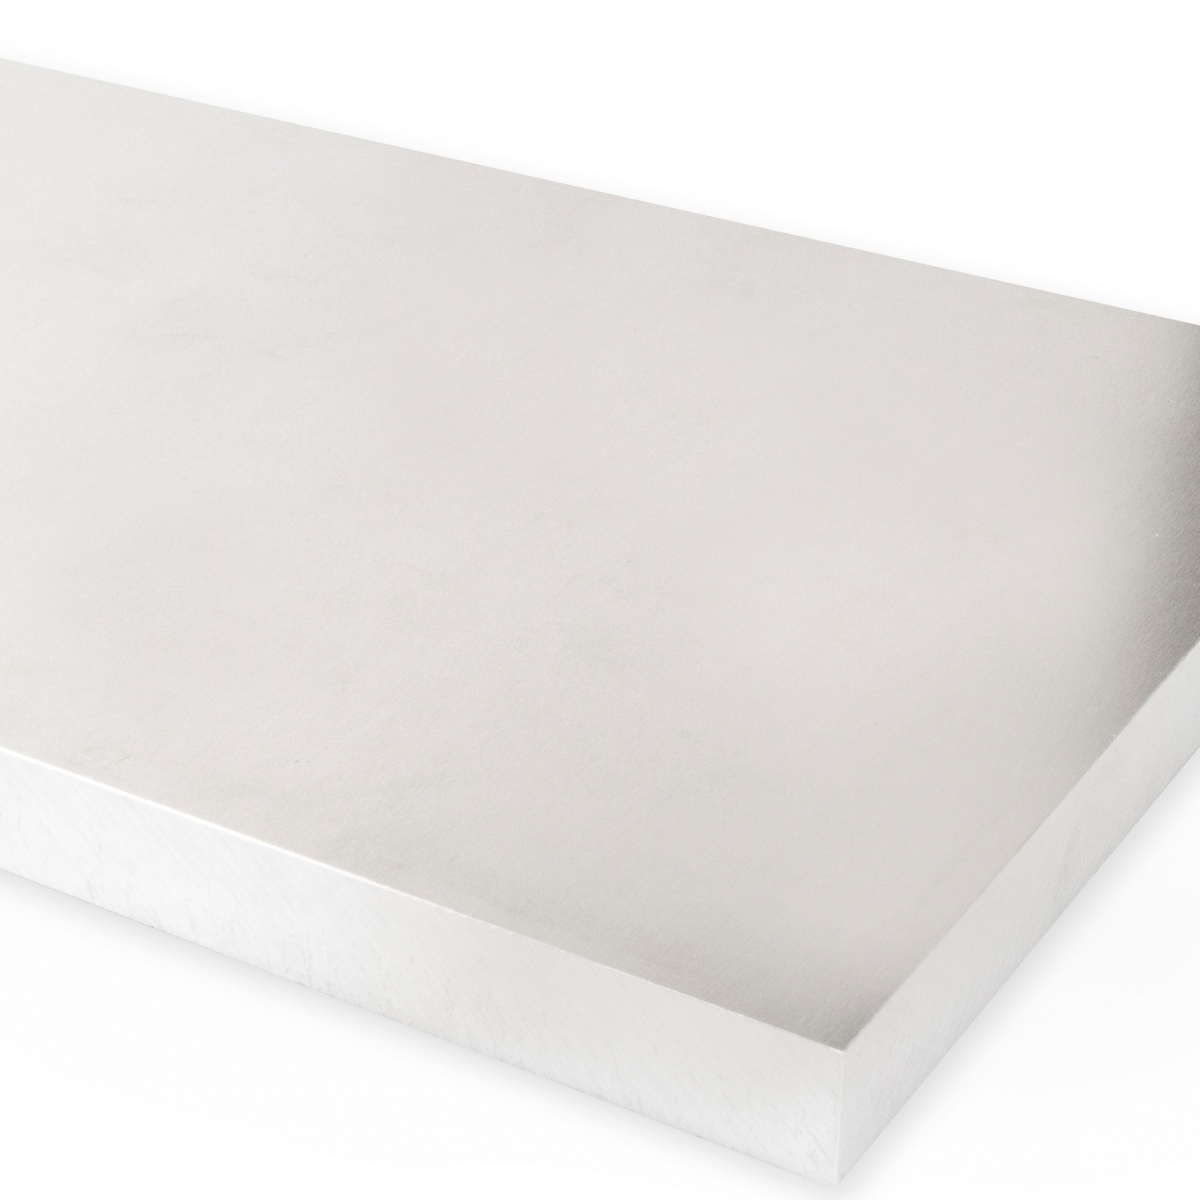 Aluminium Platte 100mm Dicke AW5083 Alu Gussplatte Walzplatte Zuschnitt Blech 